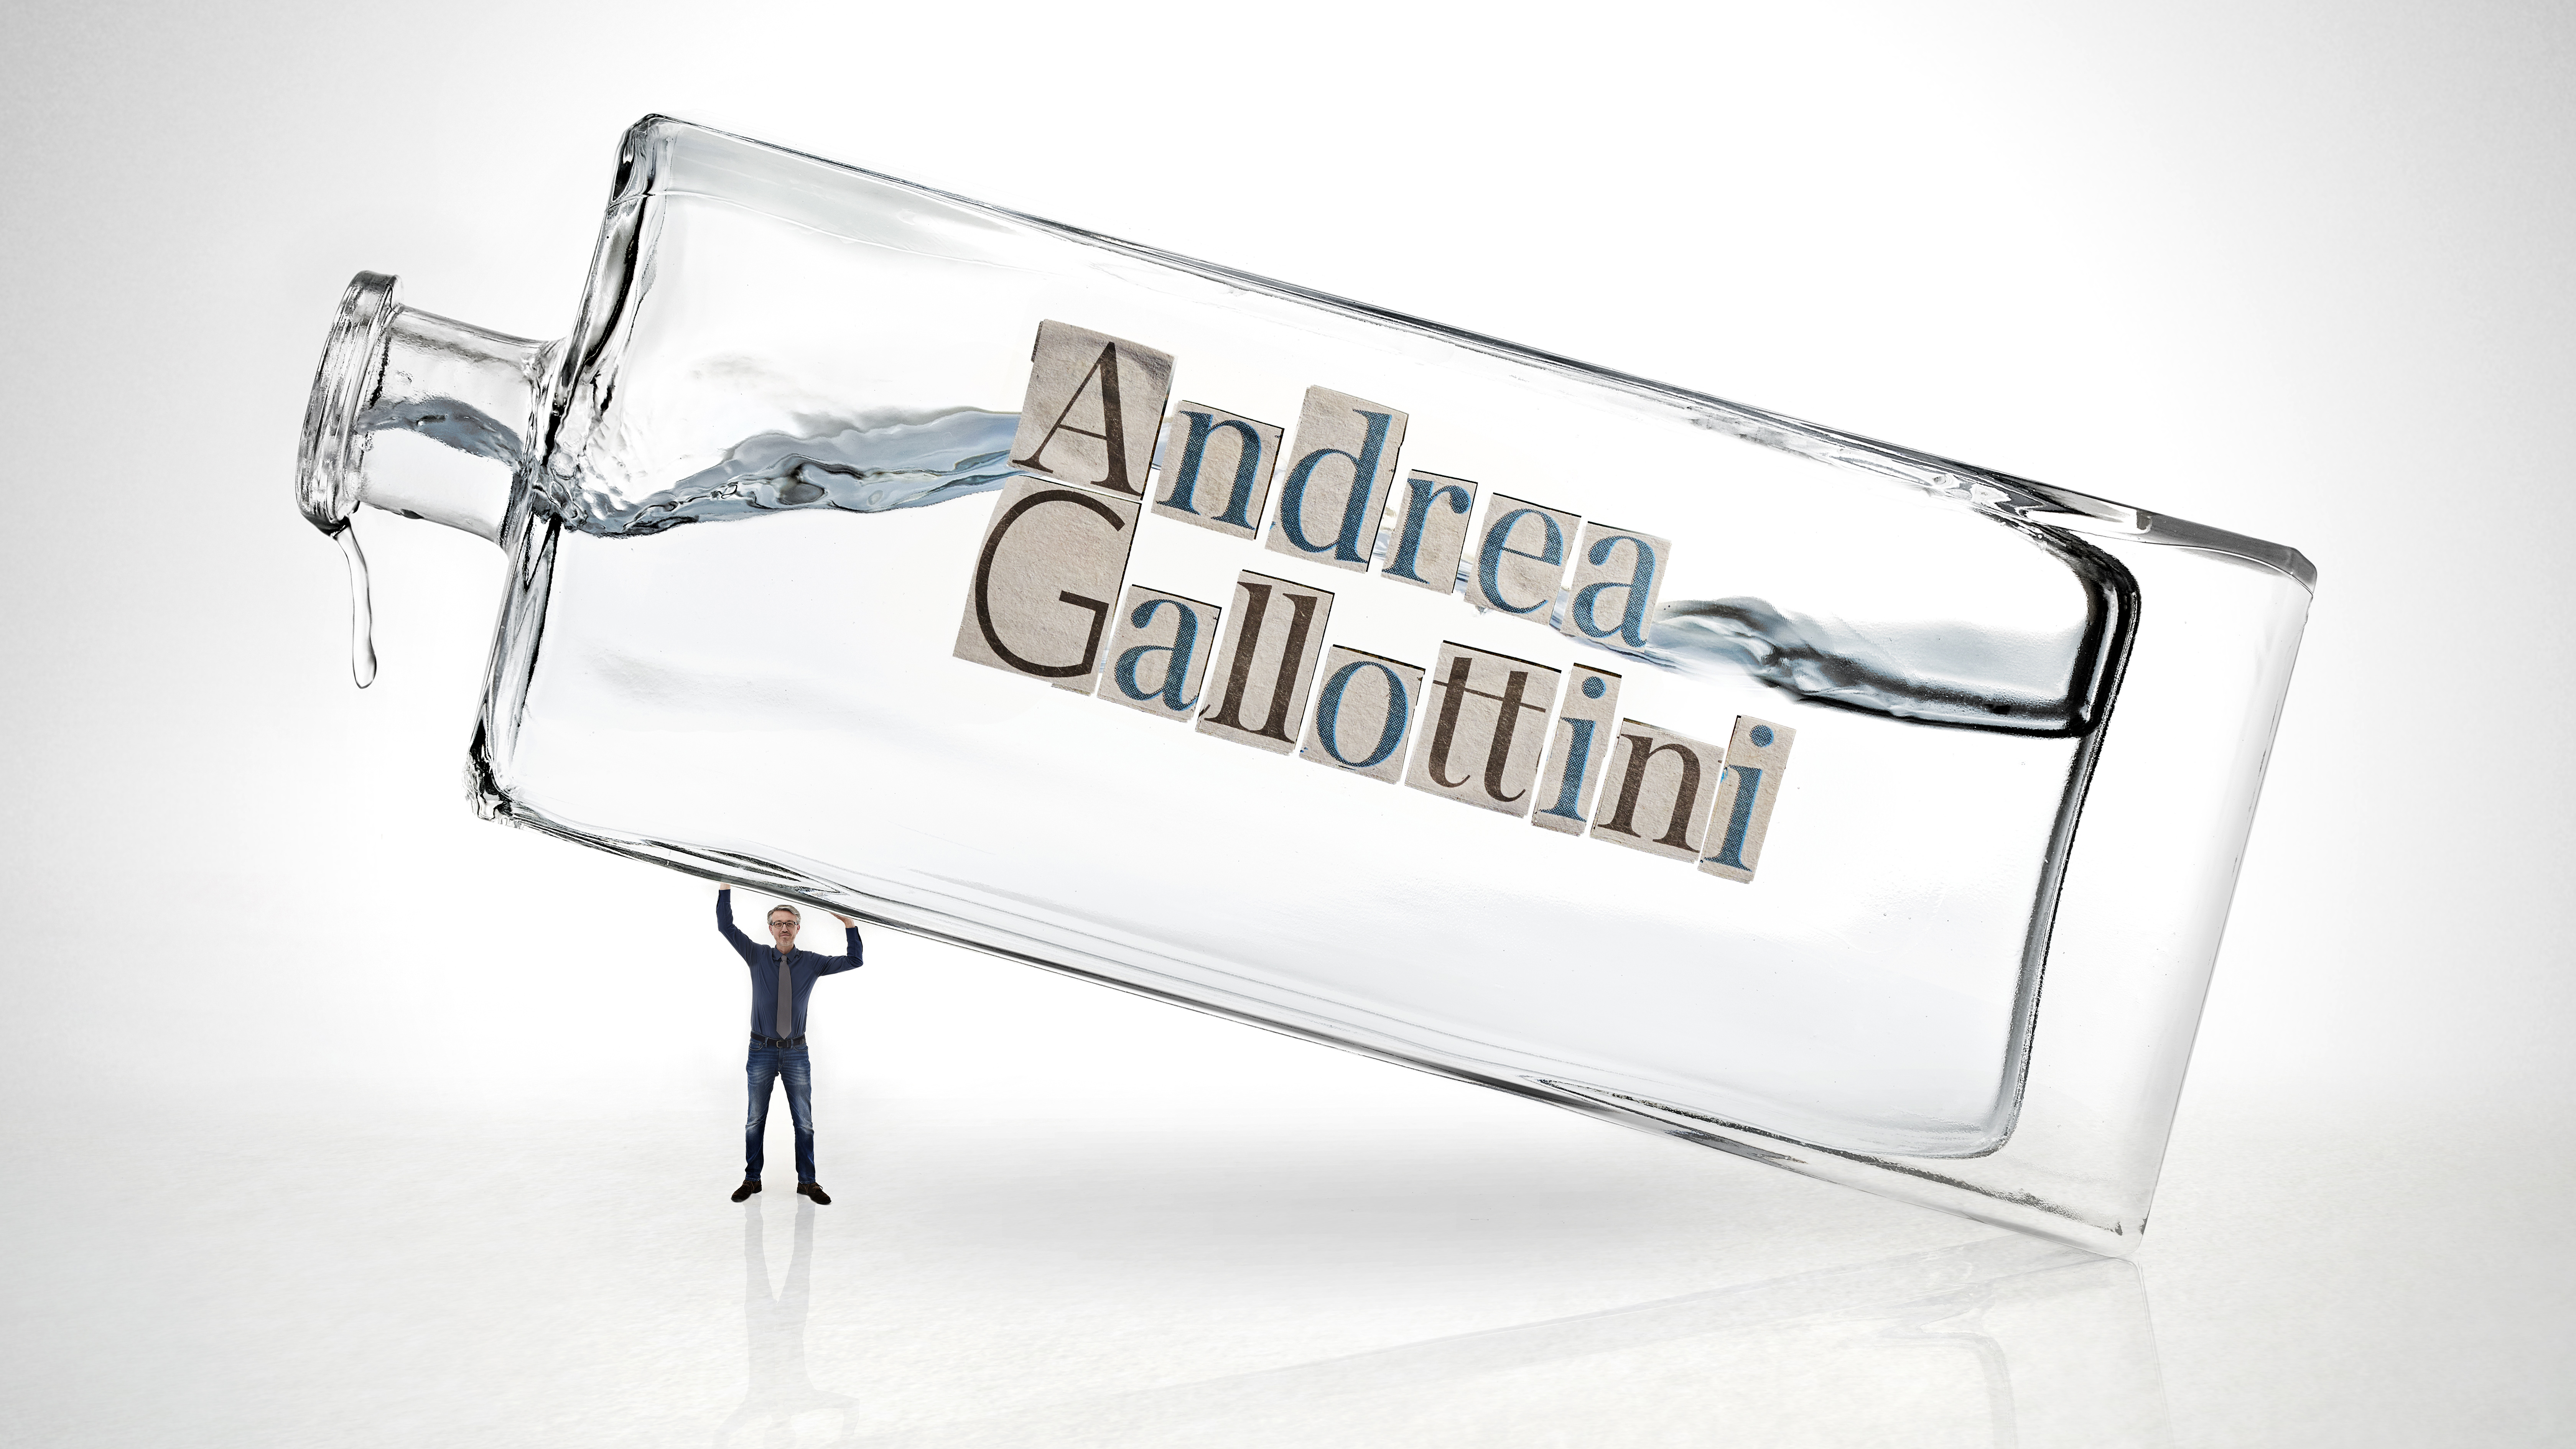 Andrea Gallottini